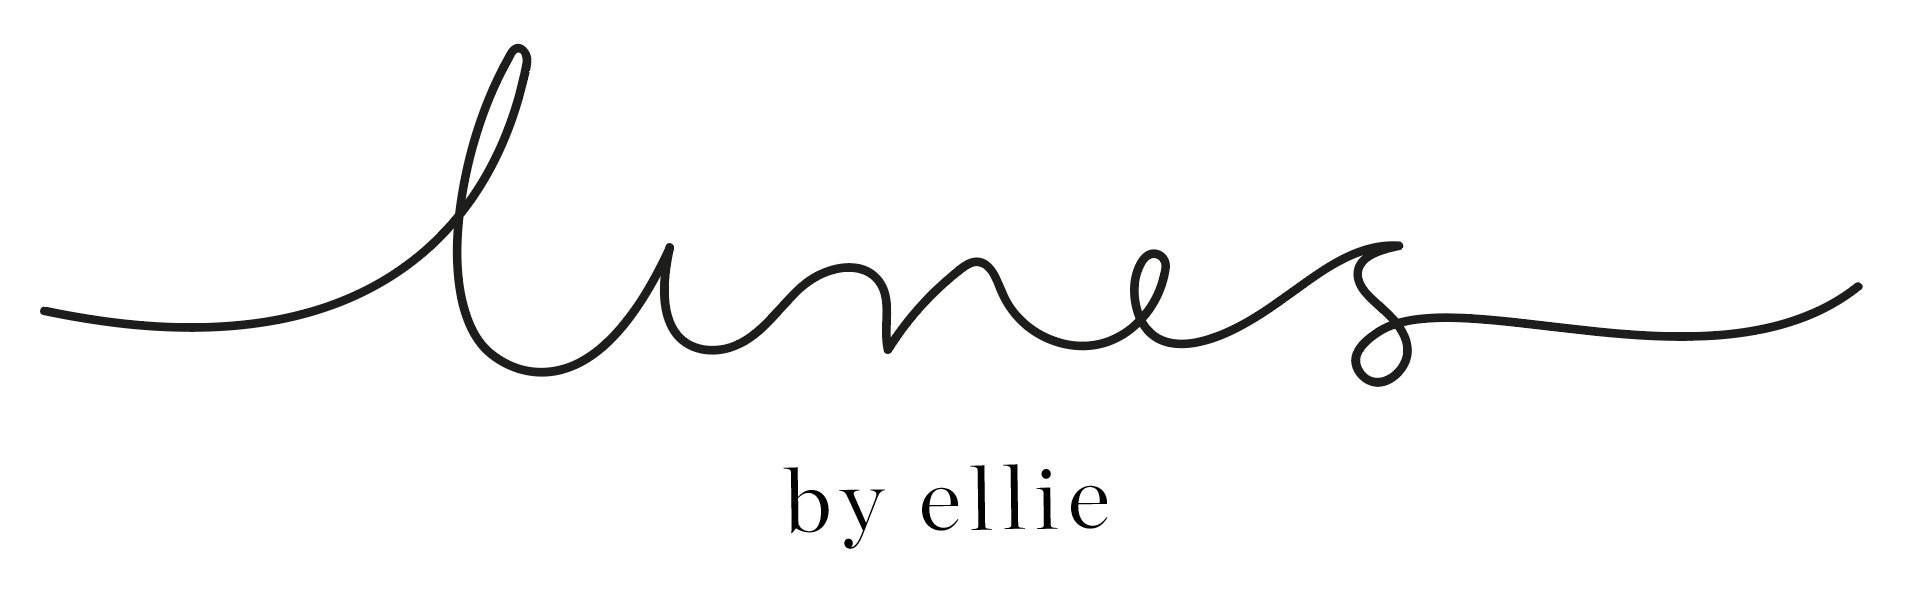 LINES by ellie